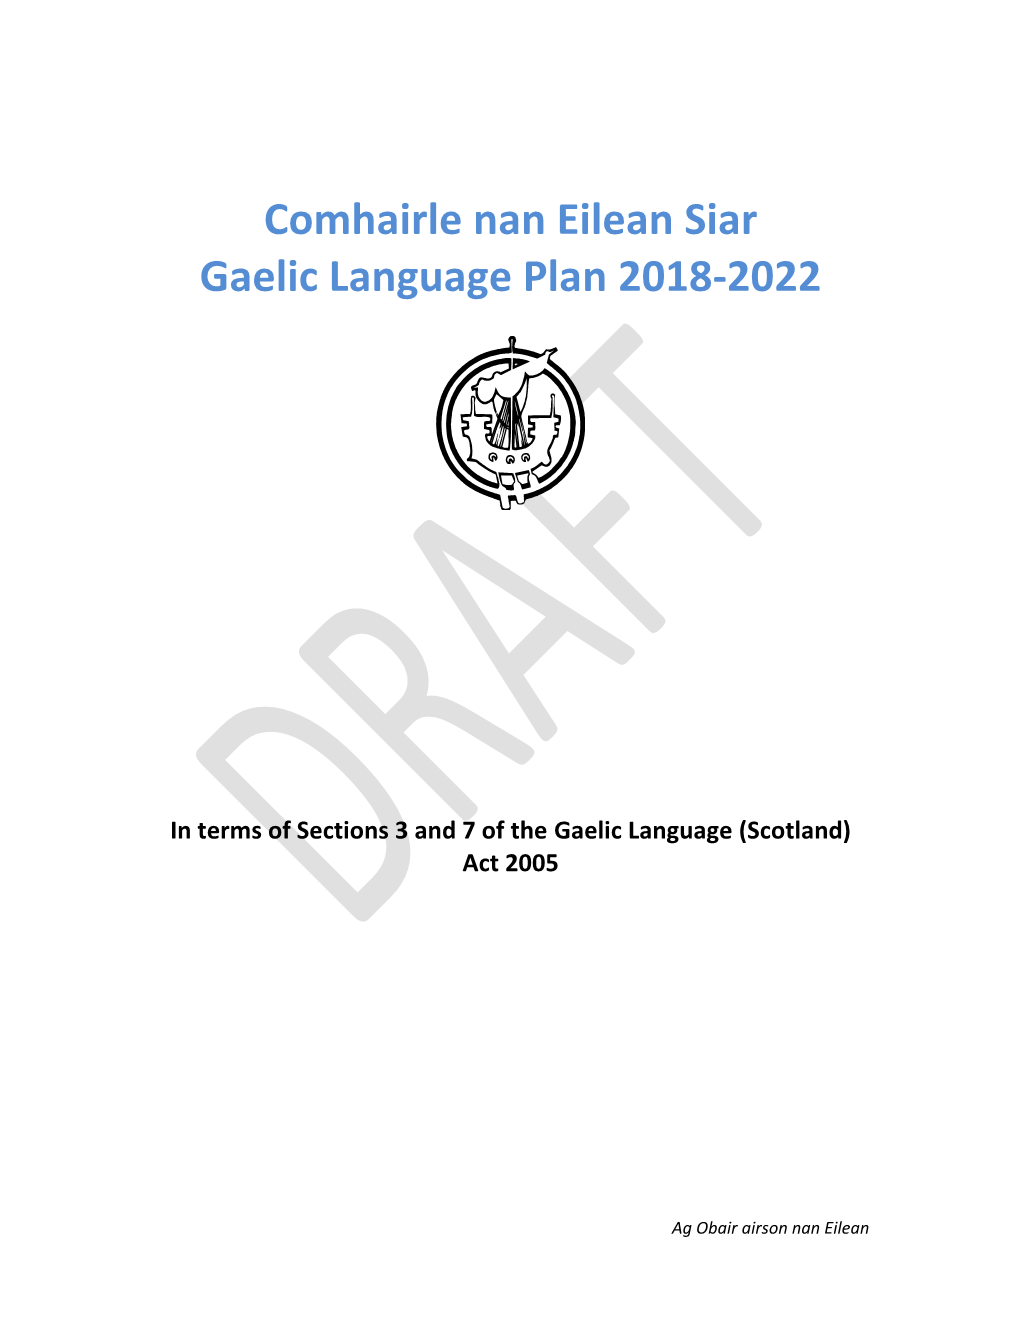 Comhairle Nan Eilean Siar Draft Gaelic Language Plan 2013-17